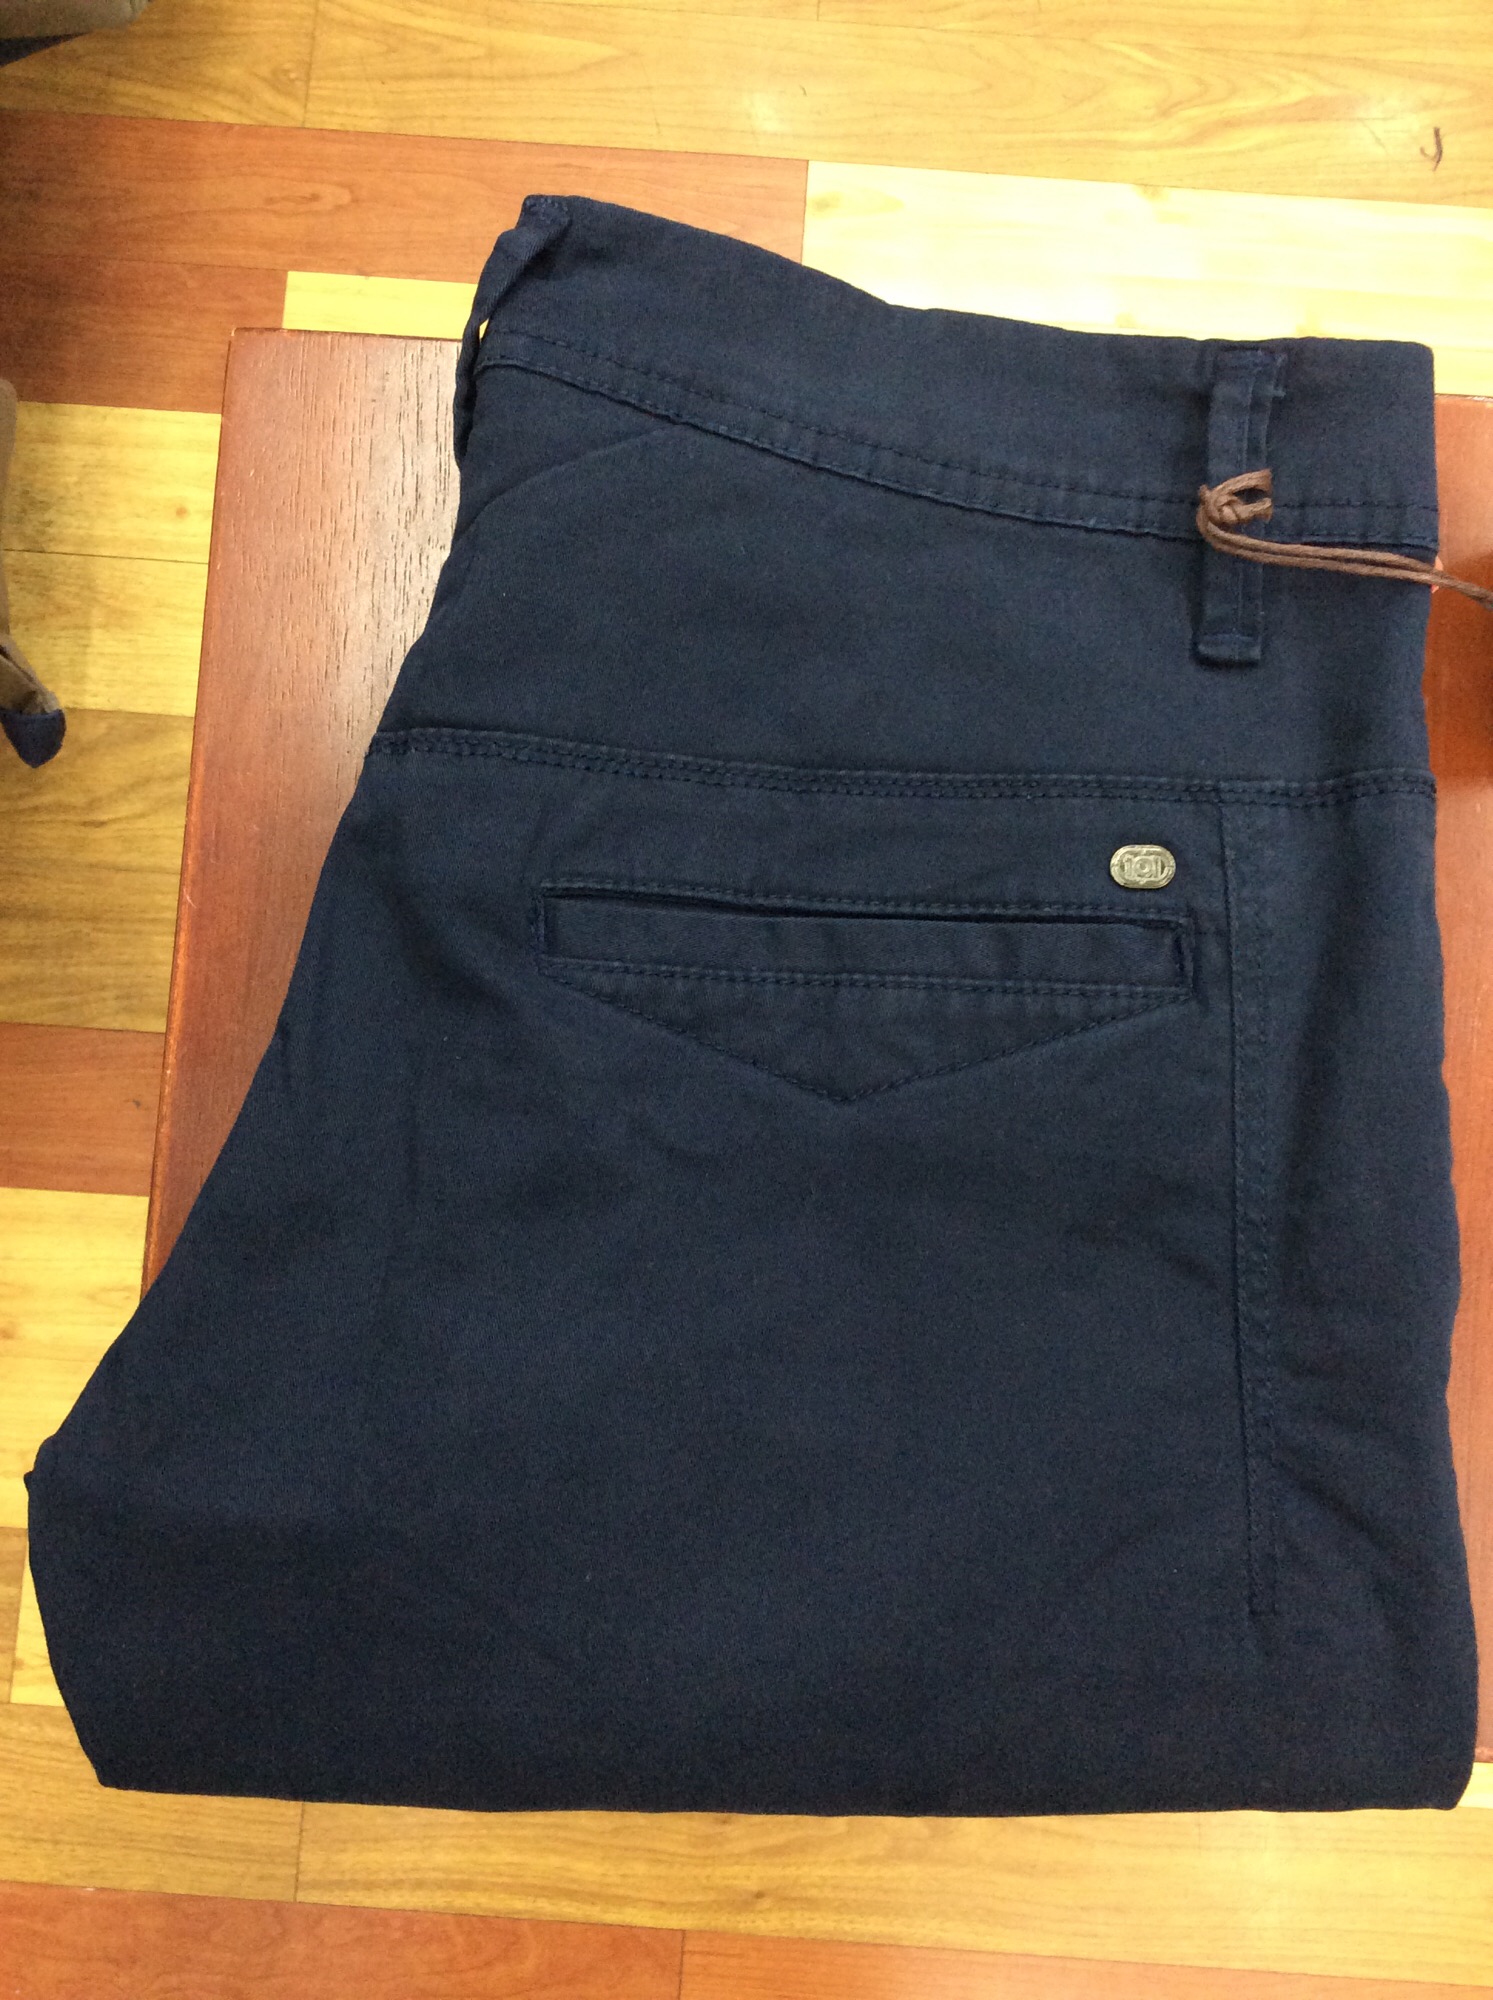 [ส่งฟรี] US-542/9 กางเกงชิโน่ขายาว กางเกงชิโน่ชาย (US แท้) ผ้ายืดมาก สินค้าคุณภาพผลิตจากไทย (ไม่จีน) งานเย็บปราณีต เนื้อผ้าอ่อนนุ่ม ใส่สบาย ทรงสวย กางเกงใส่ทำงาน หรือใส่เที่ยว เนื้อผ้าไม่บาง แต่ใส่แล้วไม่ร้อน Chino pants ทรงกระบอกเล็ก ทรงเข้ารูป แต่ไม่รัด